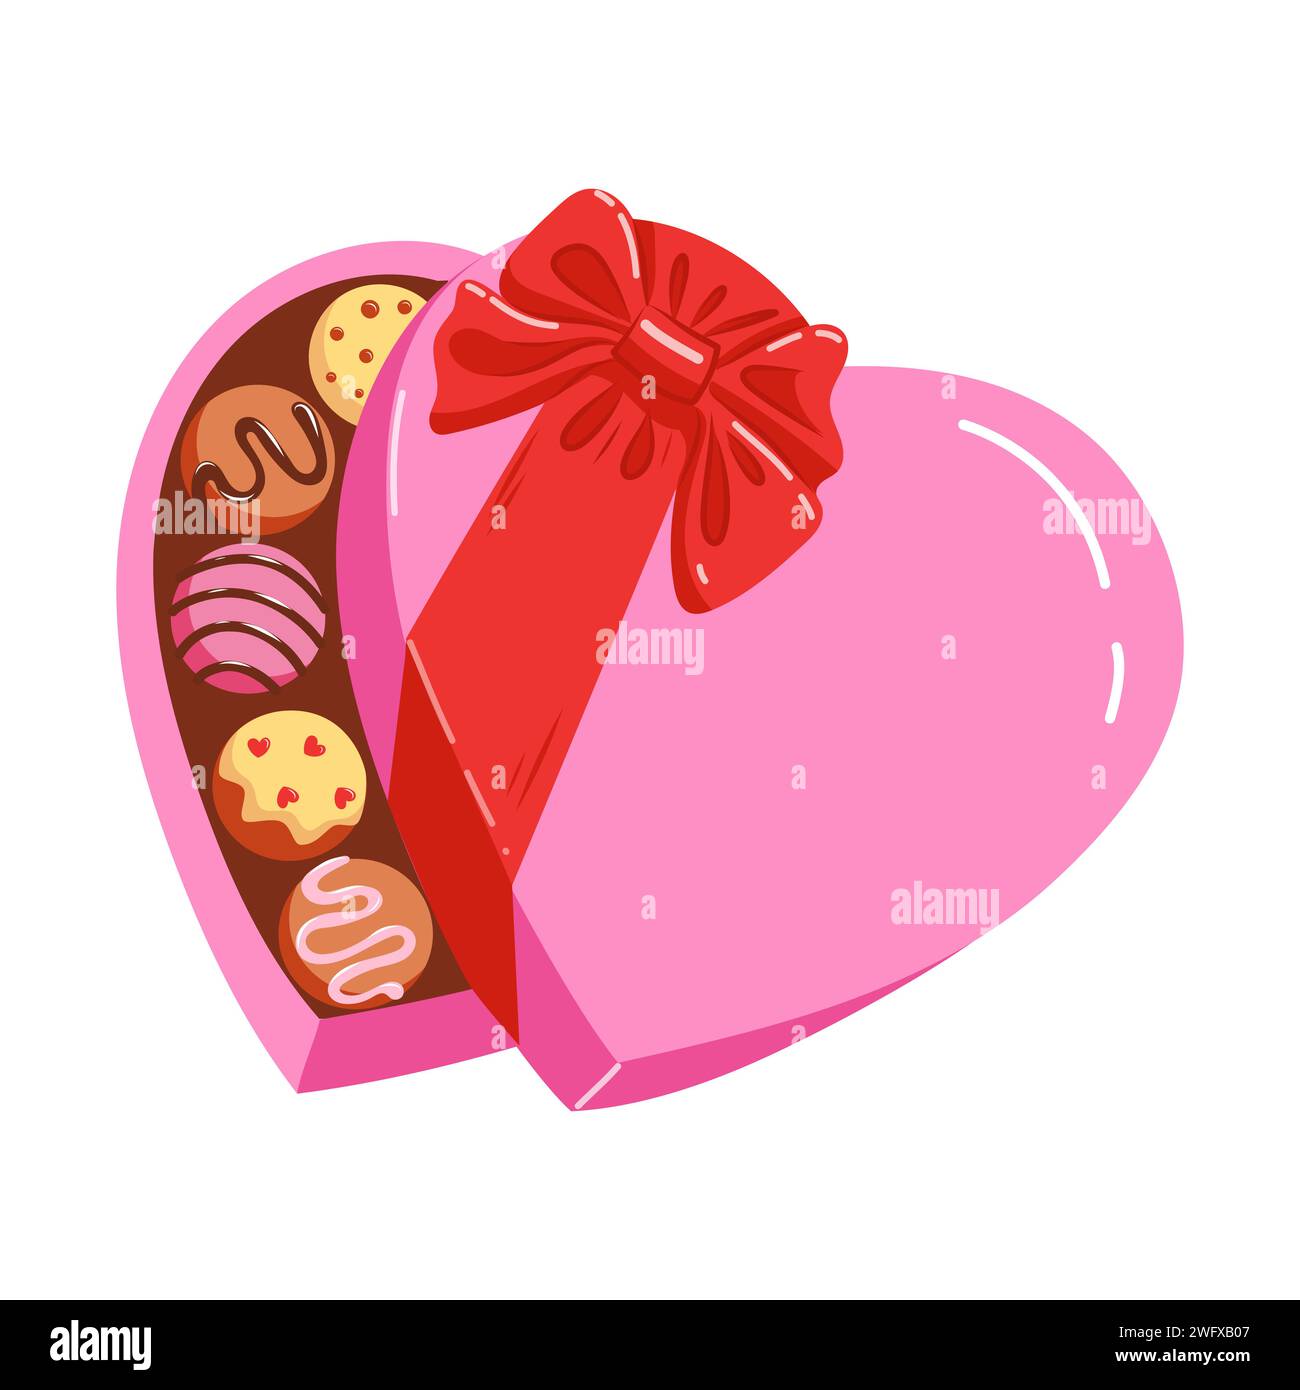 Grafica Kawaii di caramelle a forma di cuore per San Valentino